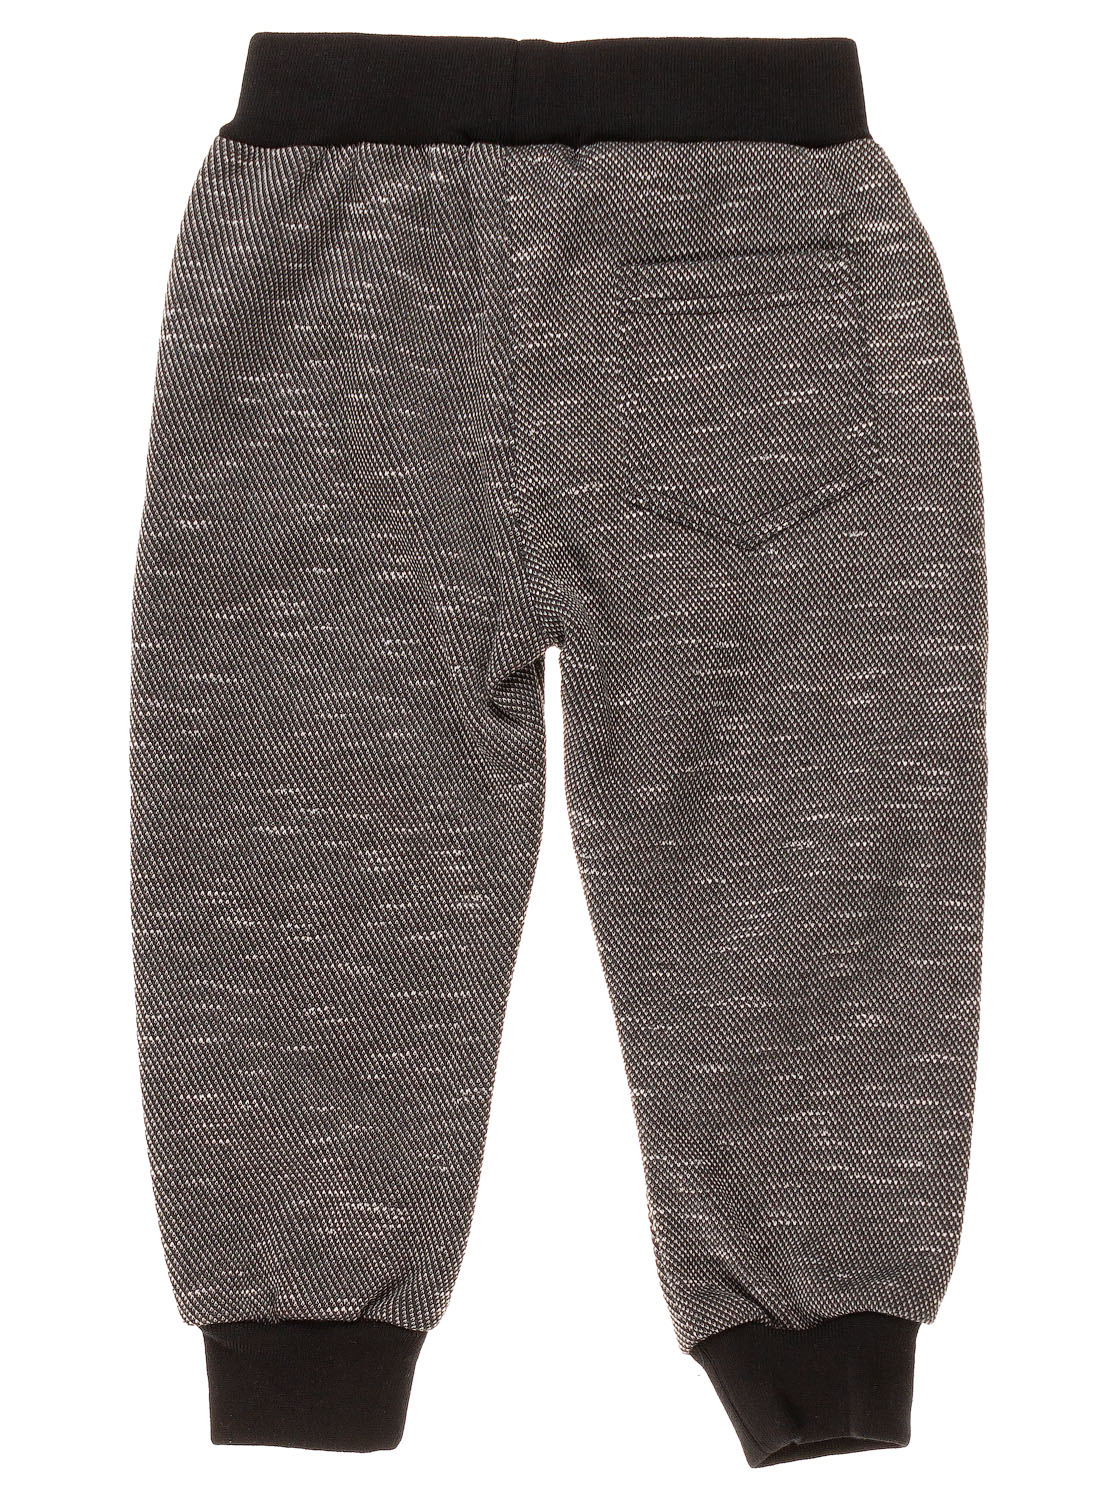 Утеплені спортивні штани для хлопчика BUDDY BOY сірий меланж 5657 - фото